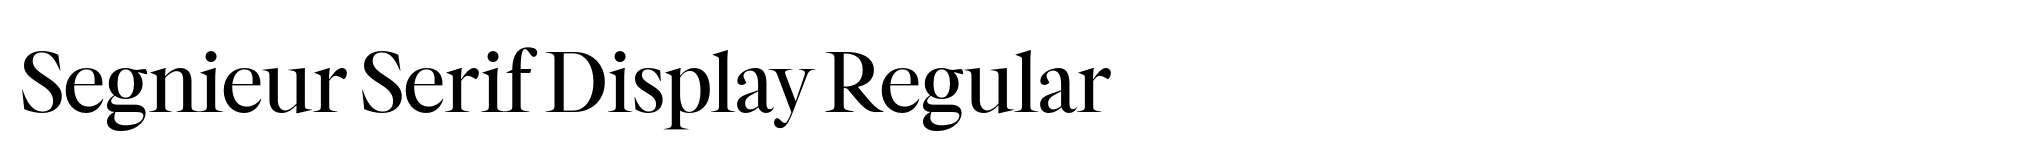 Segnieur Serif Display Regular image